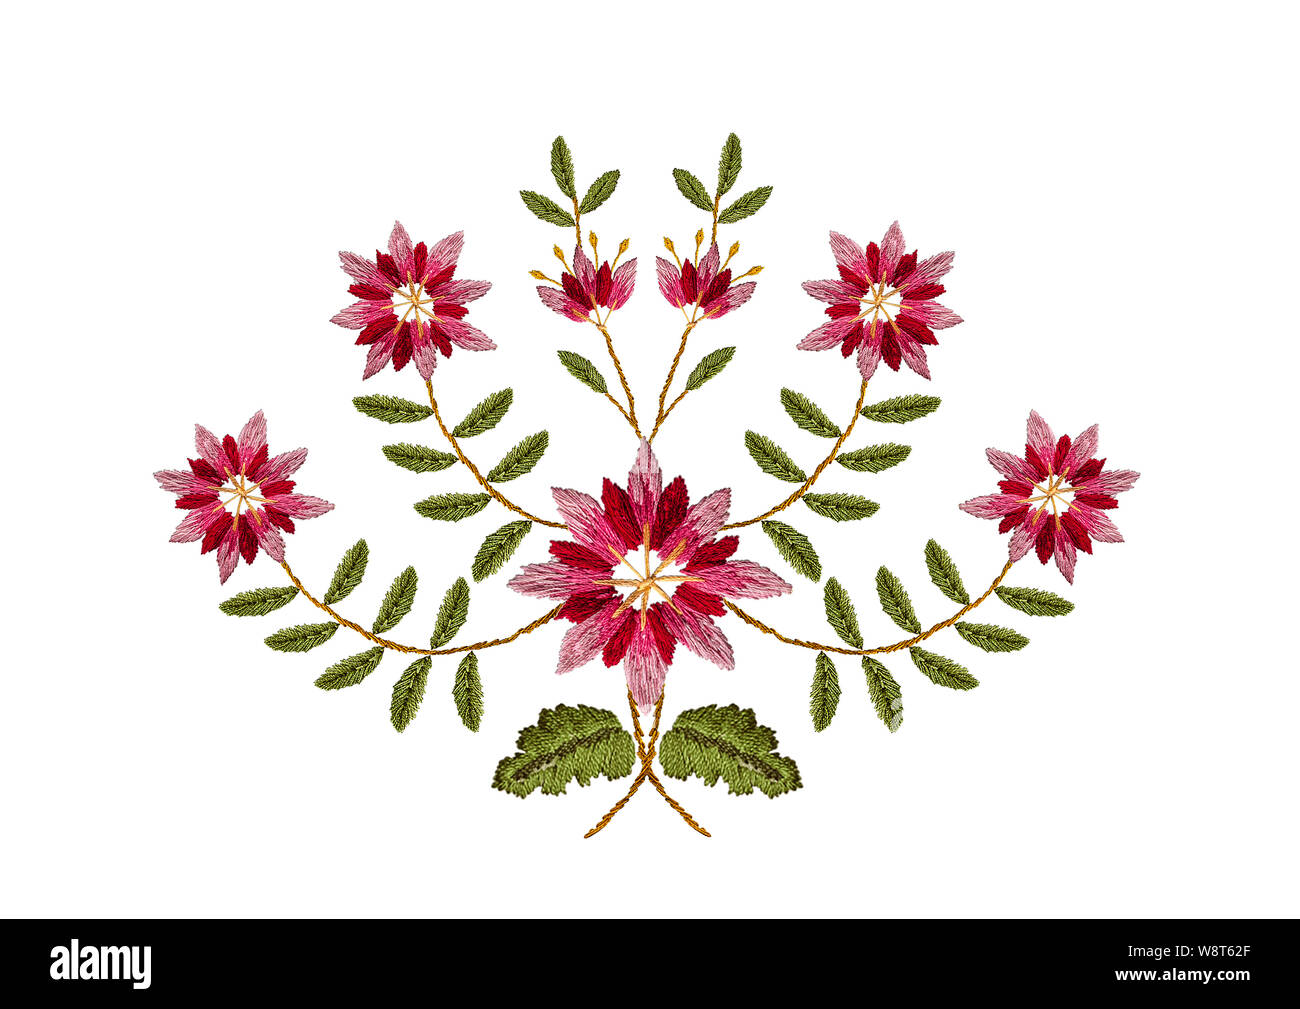 Weißer Hintergrund mit Muster für Stickerei satin stitch Bouquet von rosa mit roten Kornblumen auf verbogene Äste mit grünen Blättern Stockfoto